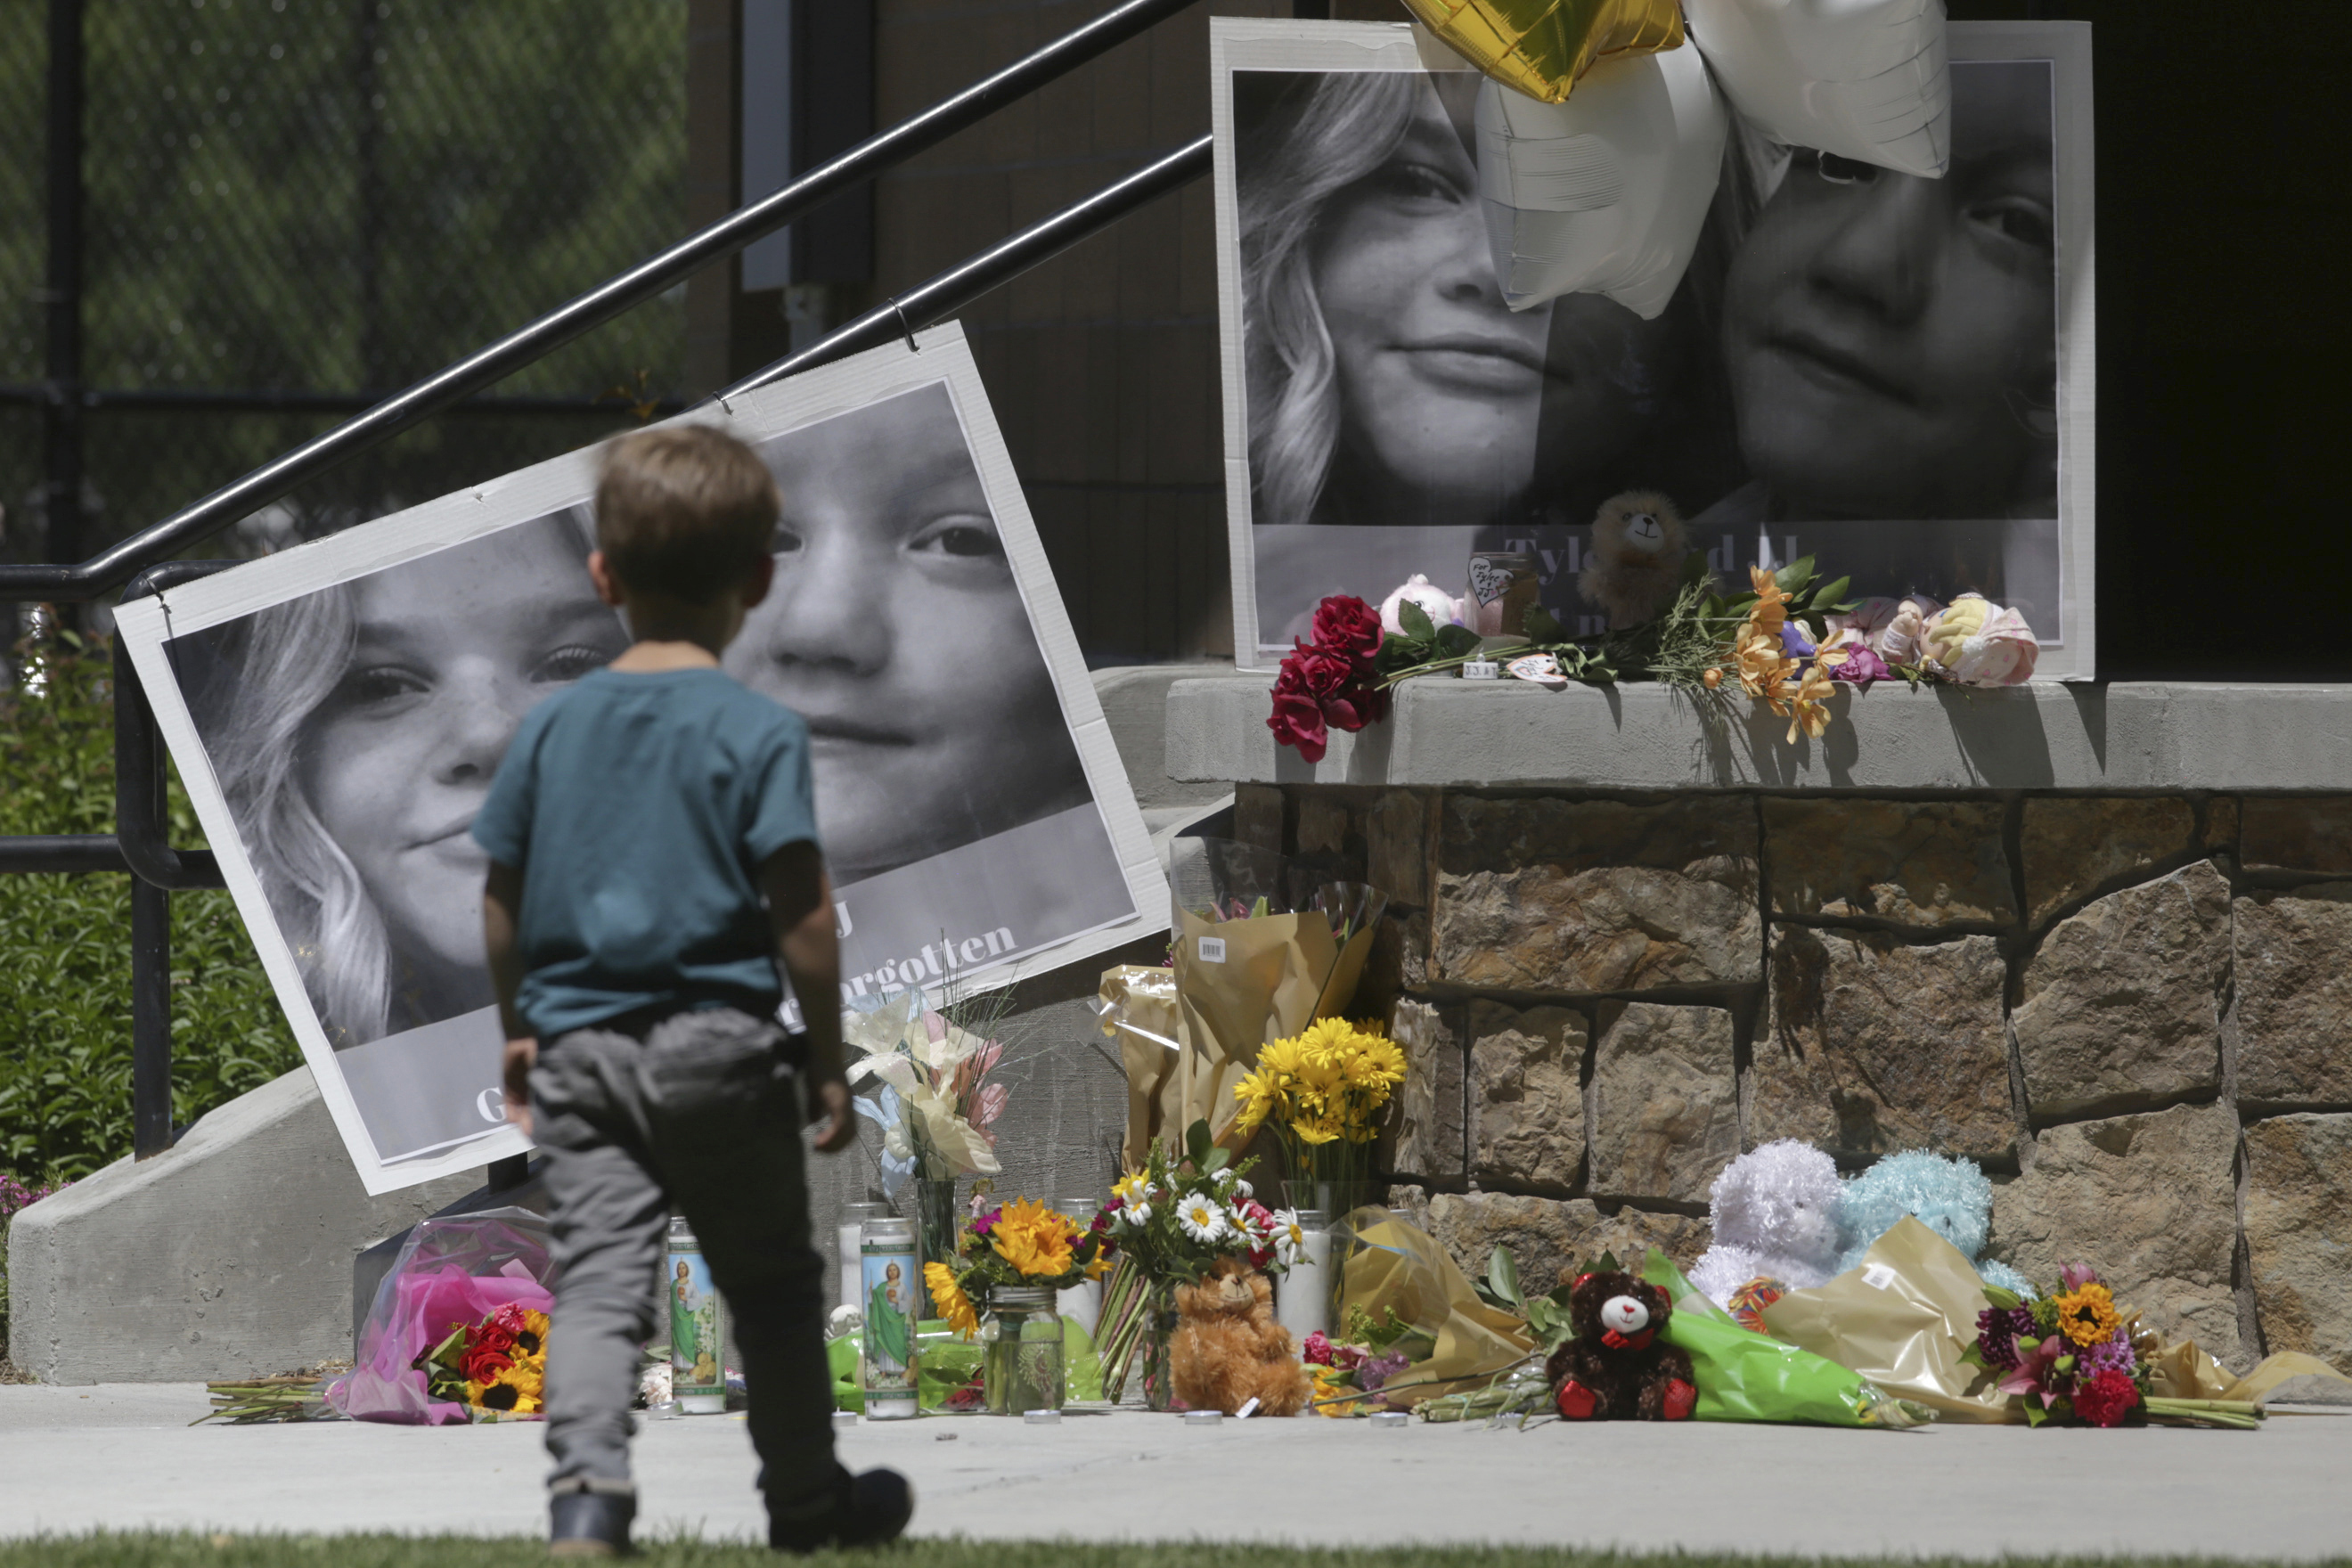 Los miembros del jurado ven fotos gráficas de niños asesinados en el juicio por asesinato de su madre